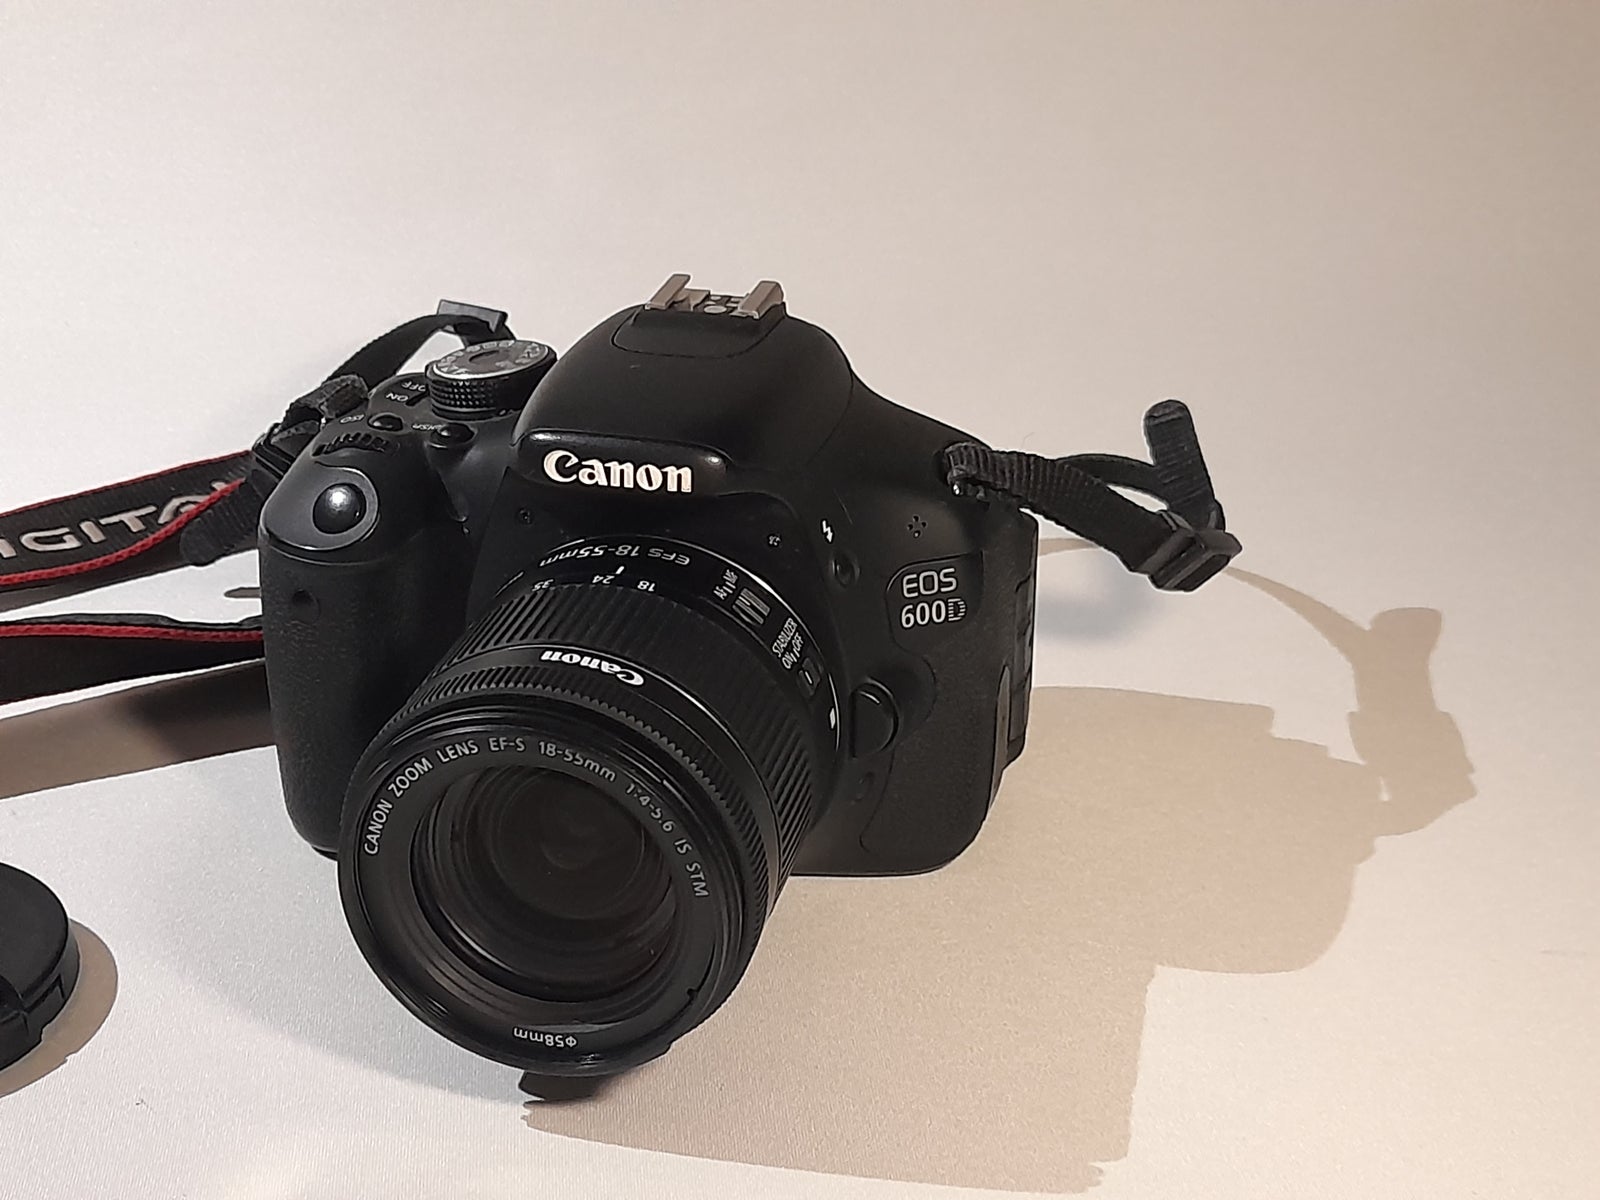 Canon, EOS 600D, 18 megapixels